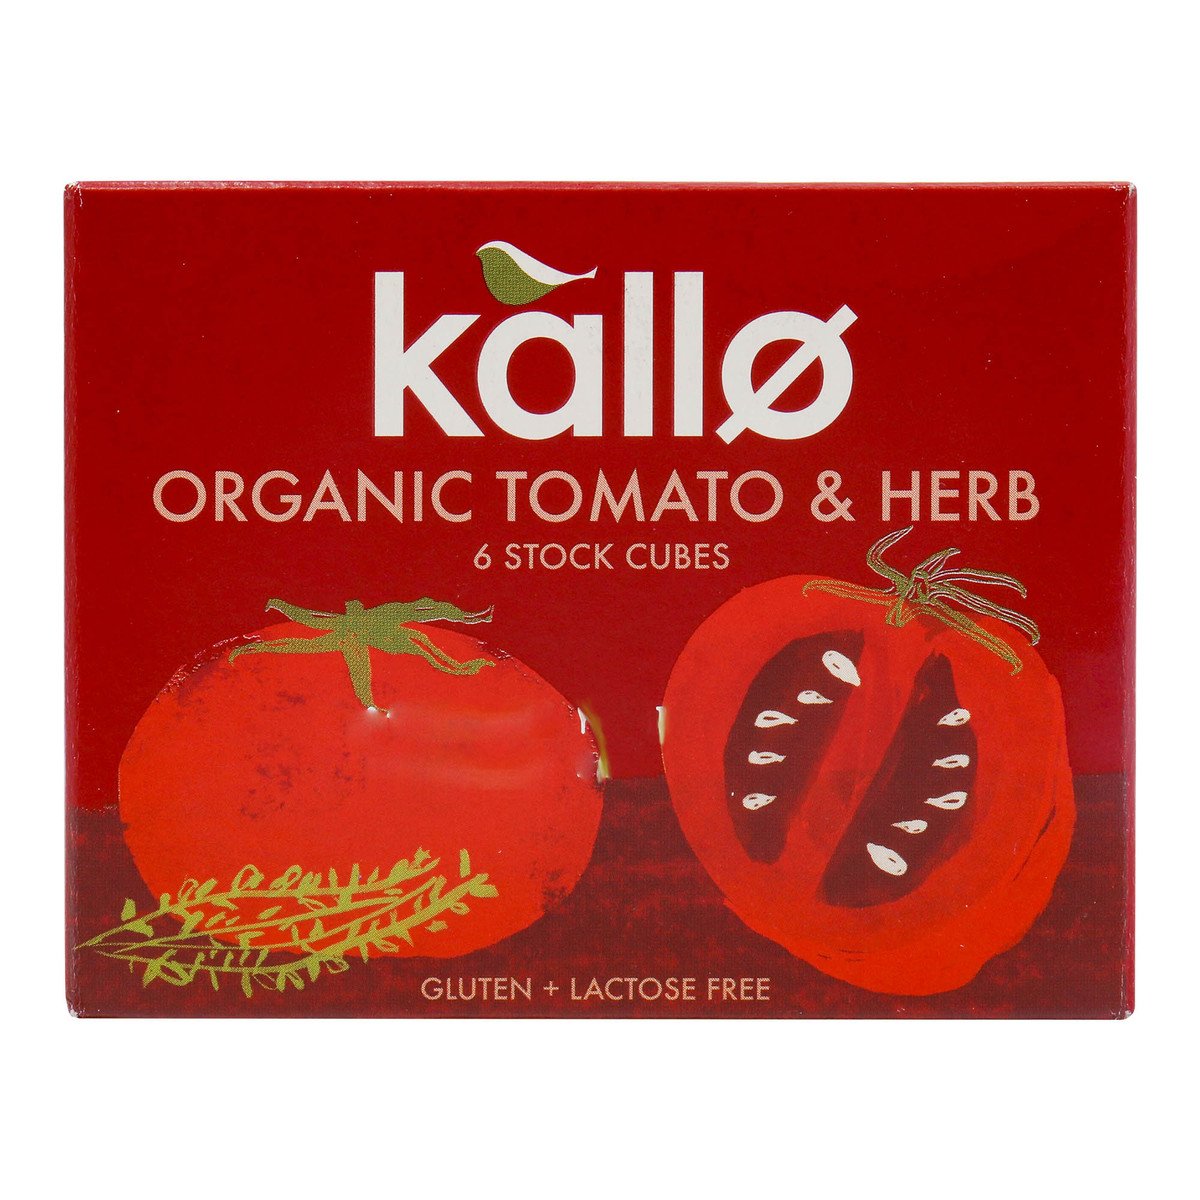 اشتري قم بشراء كالو 6 مكعبات مرقة طماطم وأعشاب عضوية 66 جم Online at Best Price من الموقع - من لولو هايبر ماركت Bouillons Flavouring في الامارات